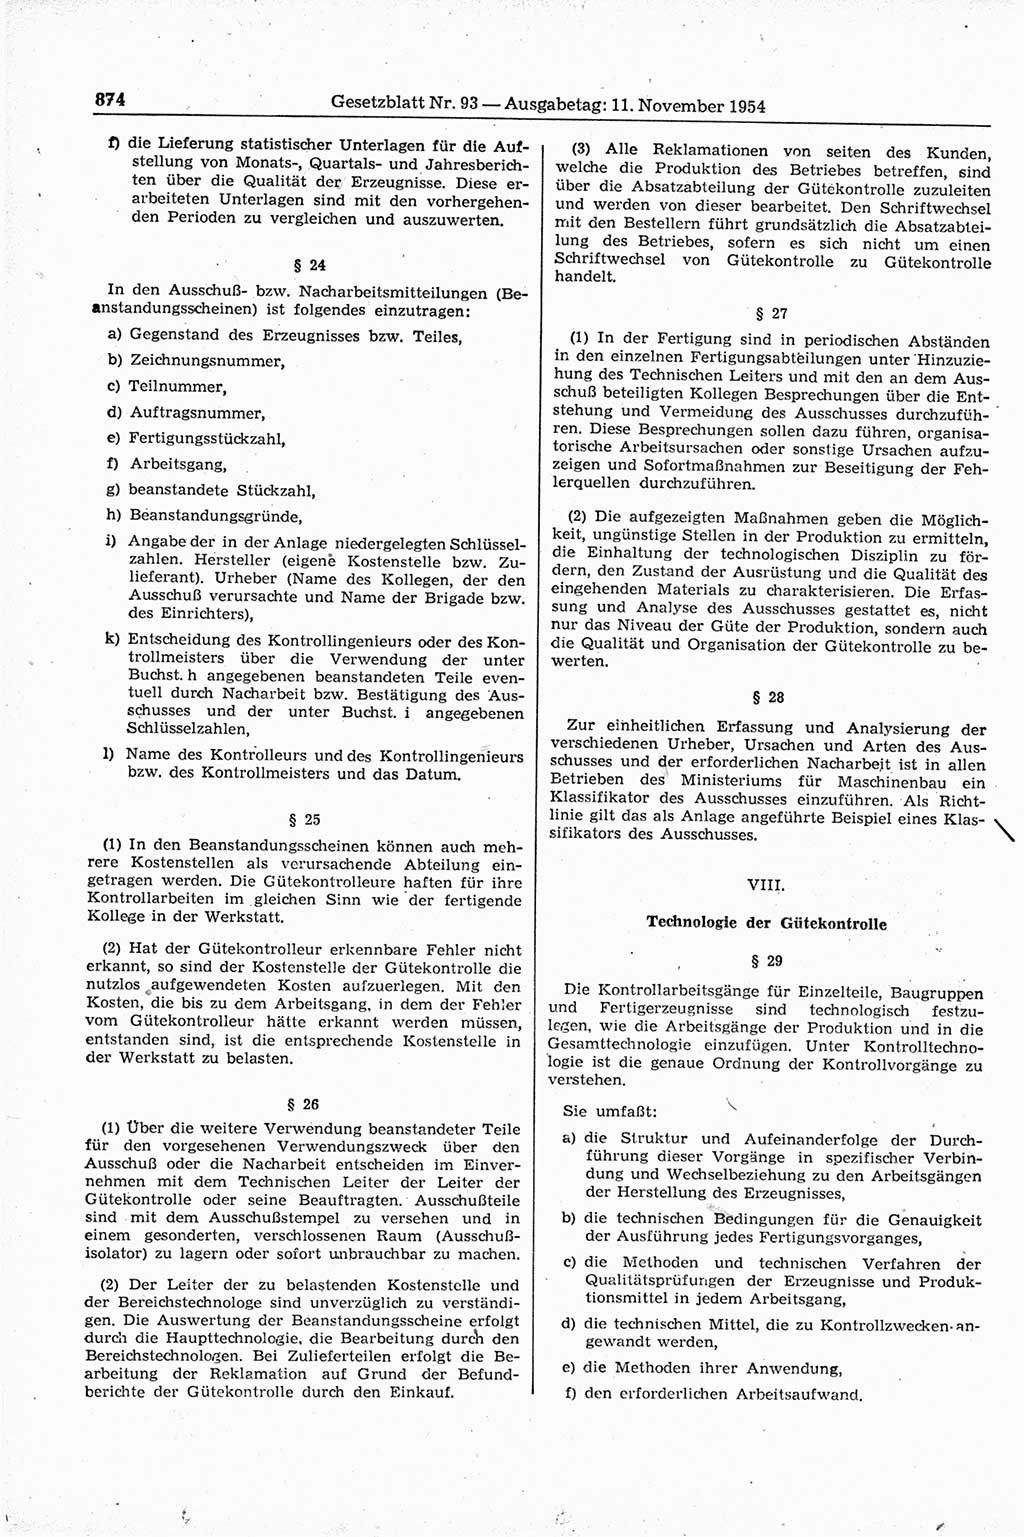 Gesetzblatt (GBl.) der Deutschen Demokratischen Republik (DDR) 1954, Seite 874 (GBl. DDR 1954, S. 874)